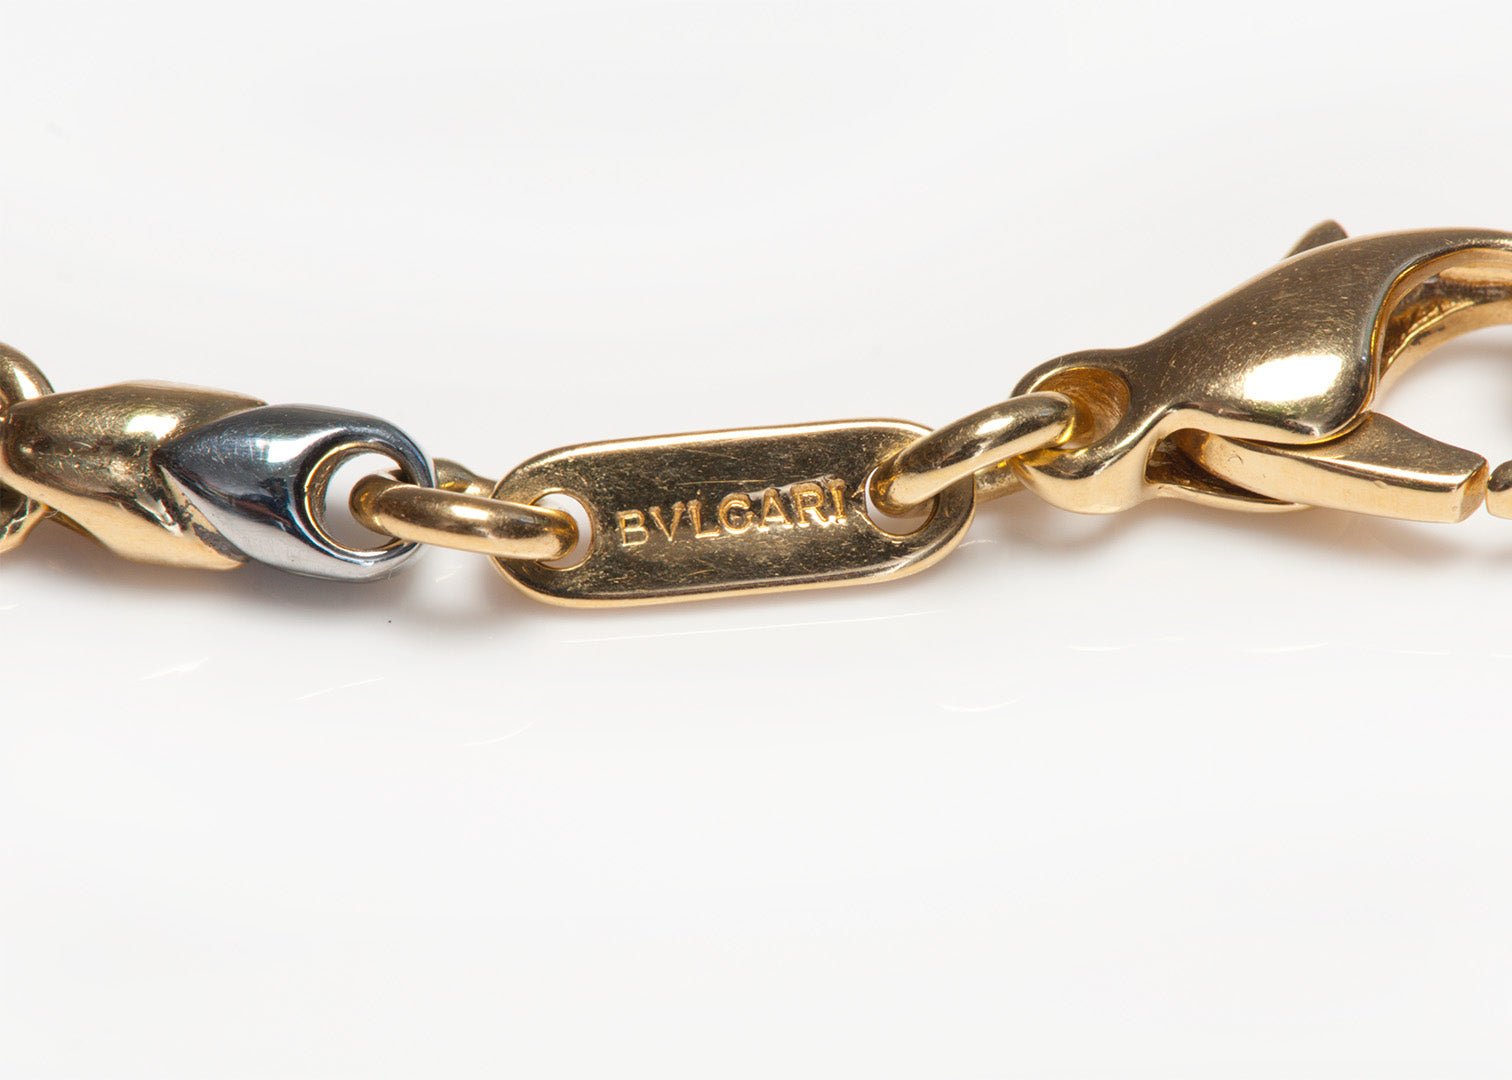 Bulgari Doppio Steel Gold Chain Necklace - DSF Antique Jewelry